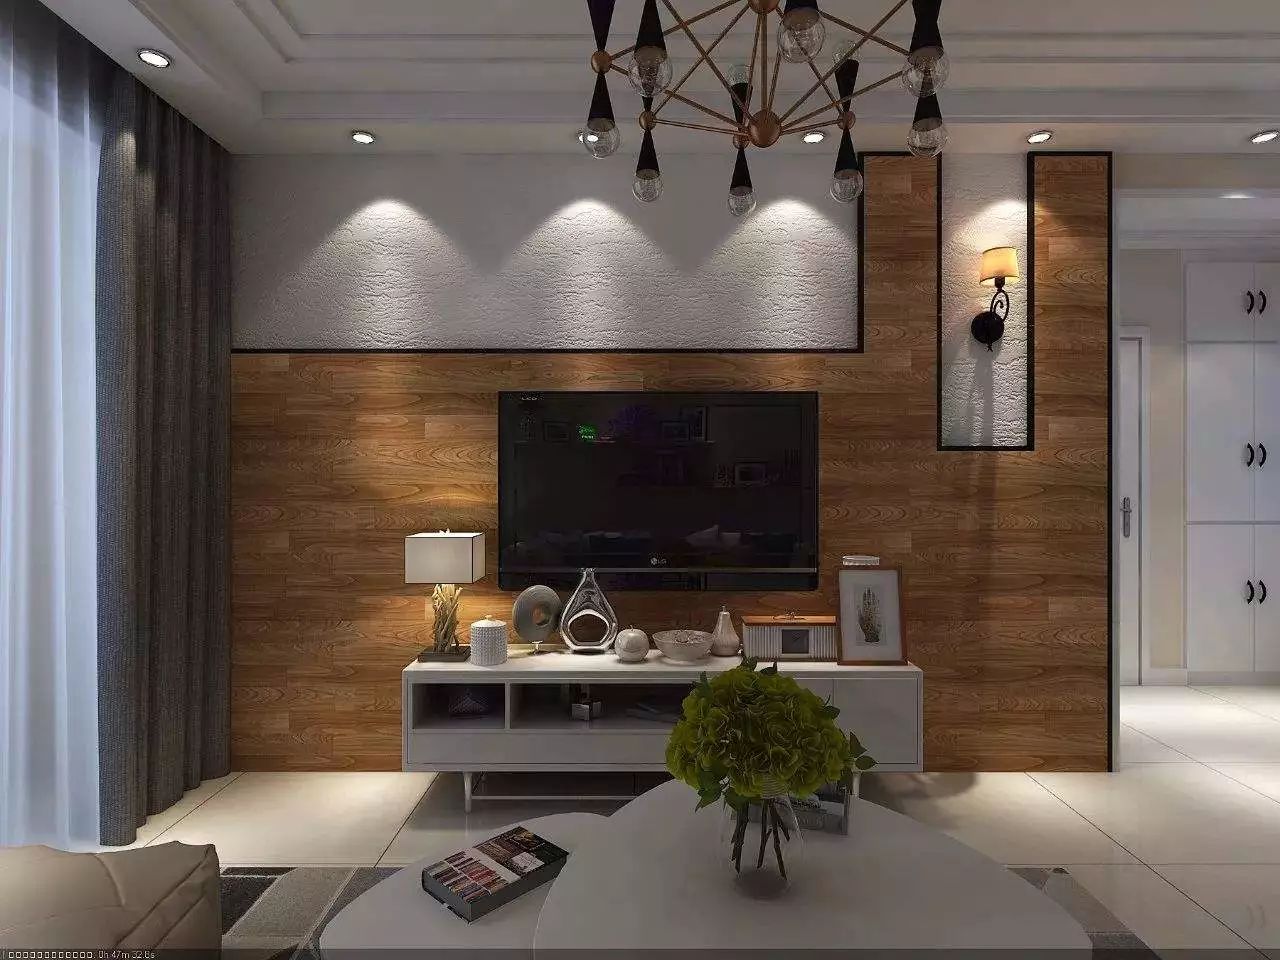 电视背景墙运用木地板上墙,在元素上是空间整体一致,在形状上增加时尚